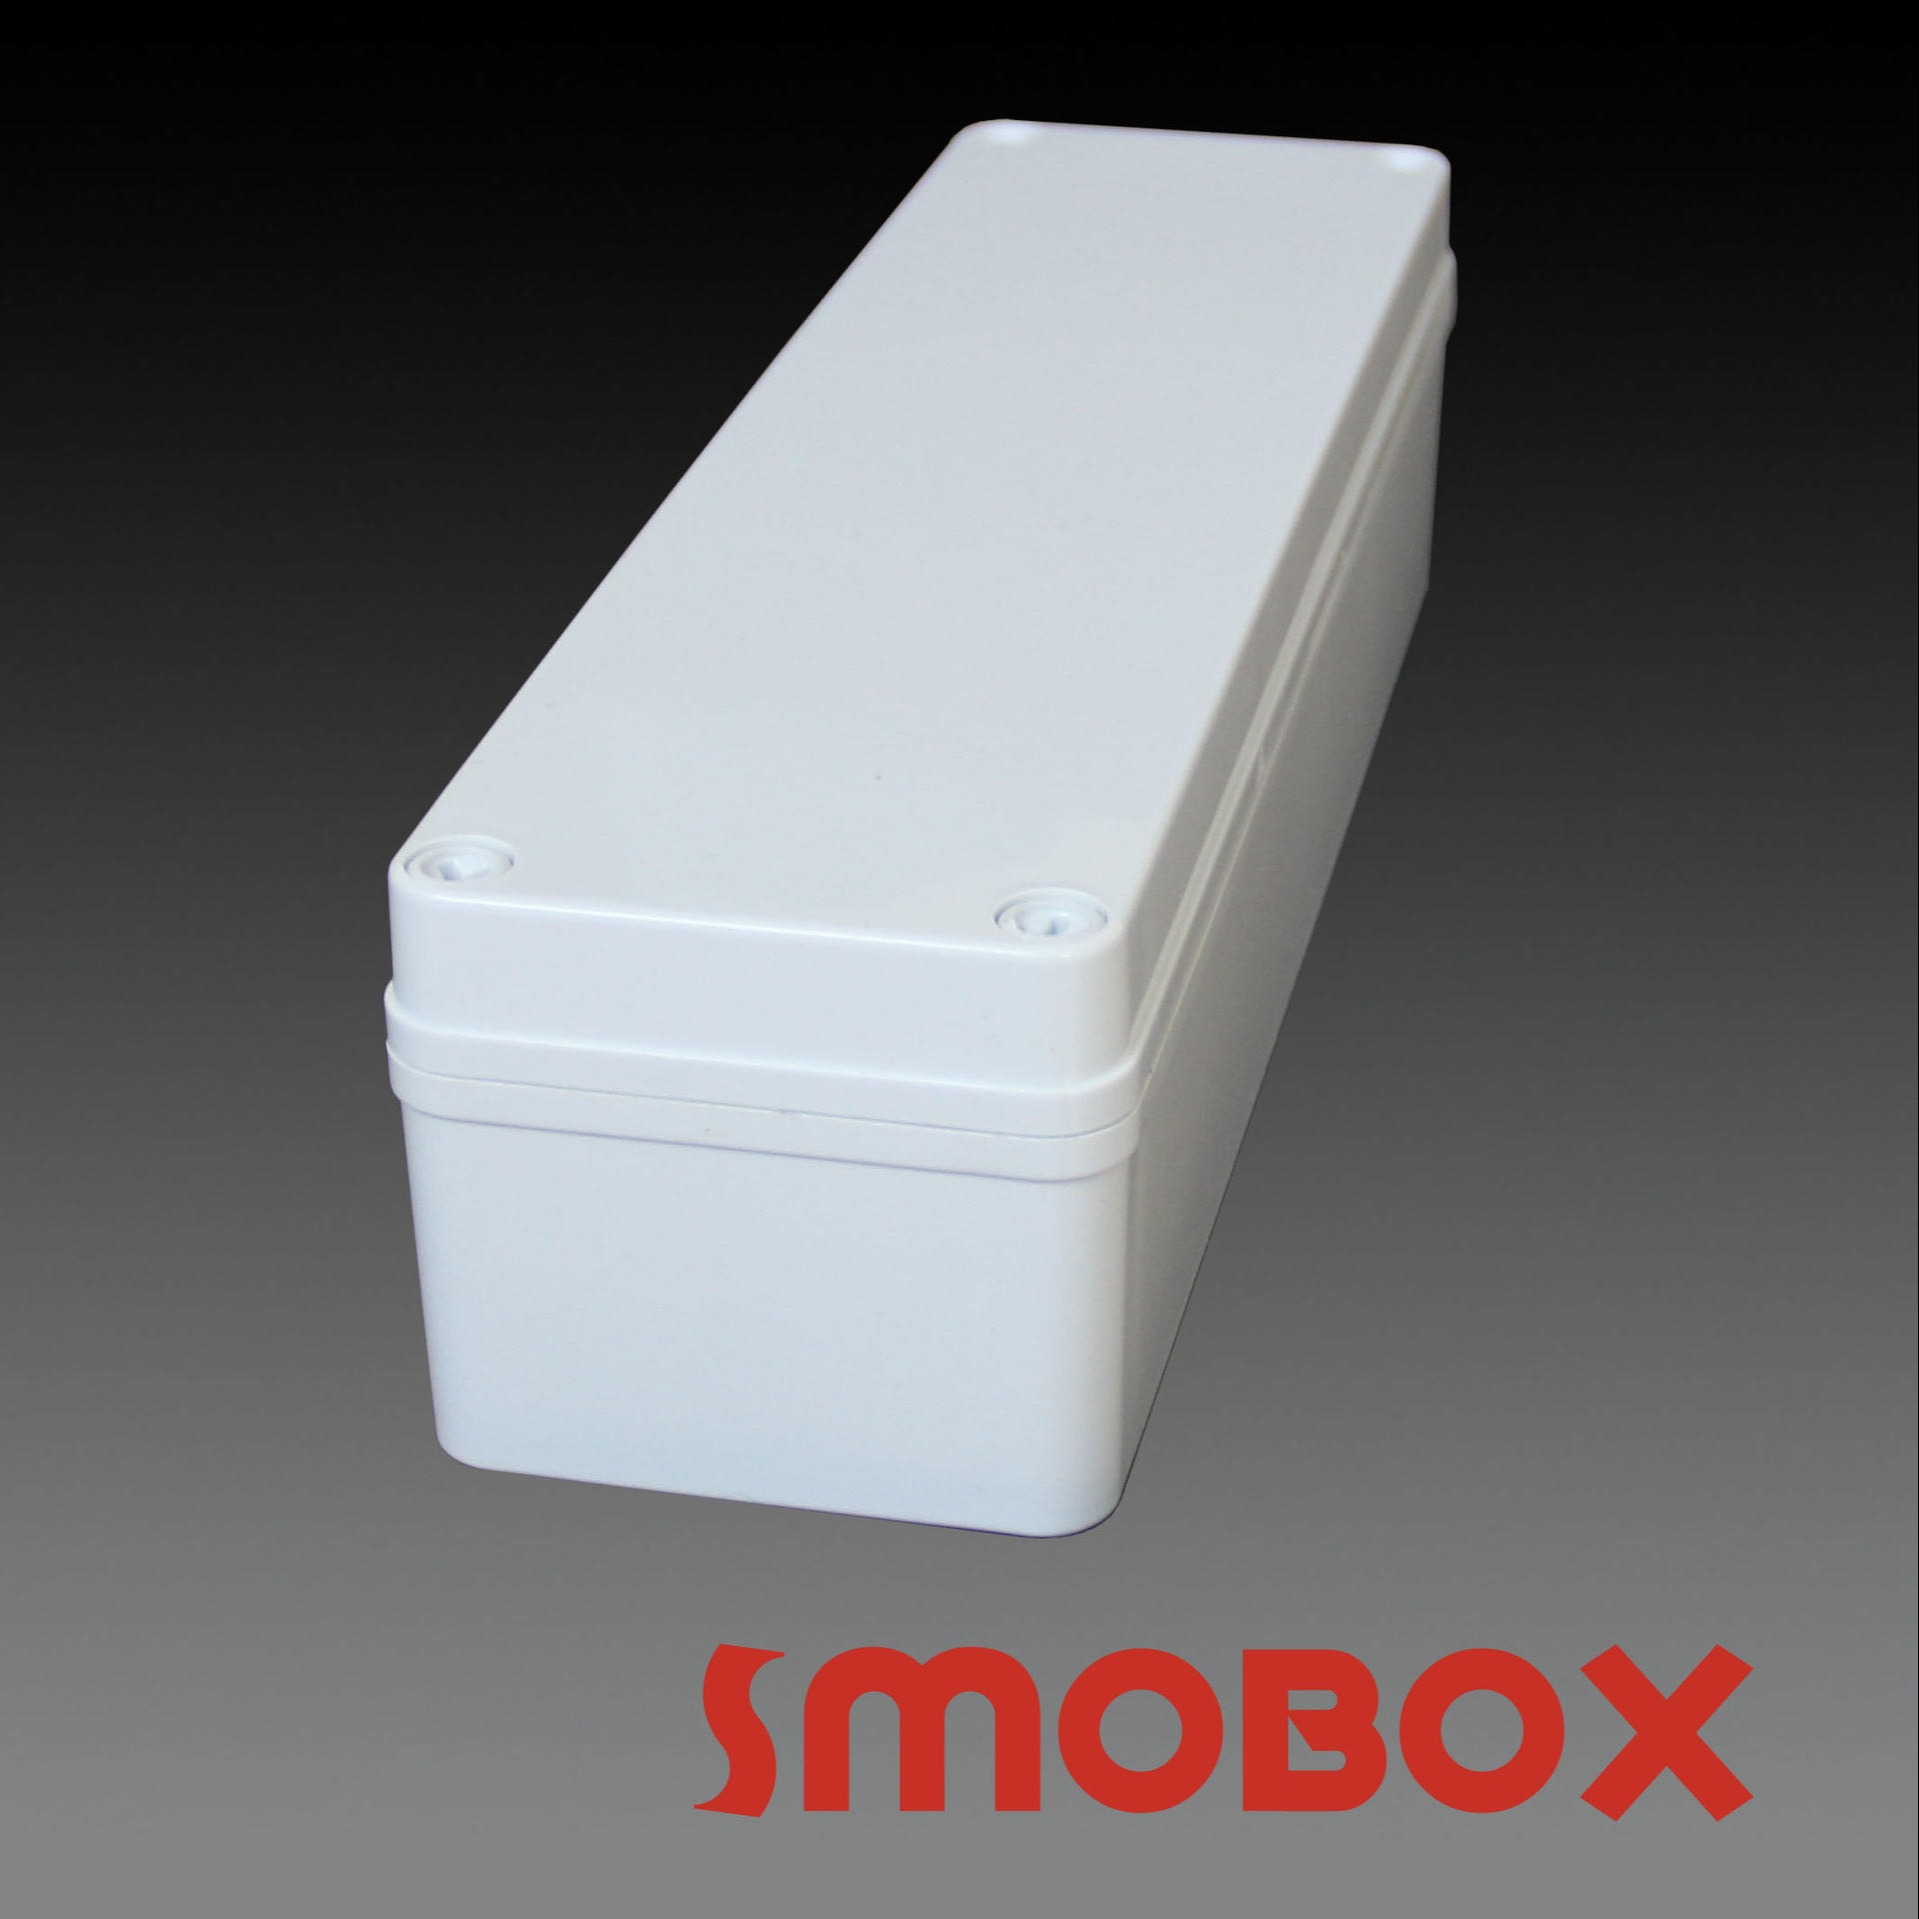 SMOBOX电气密封箱80 280 70 螺钉 电气密封箱 防水控制箱 接线盒外壳 IP65防尘防潮 厂家直销图片